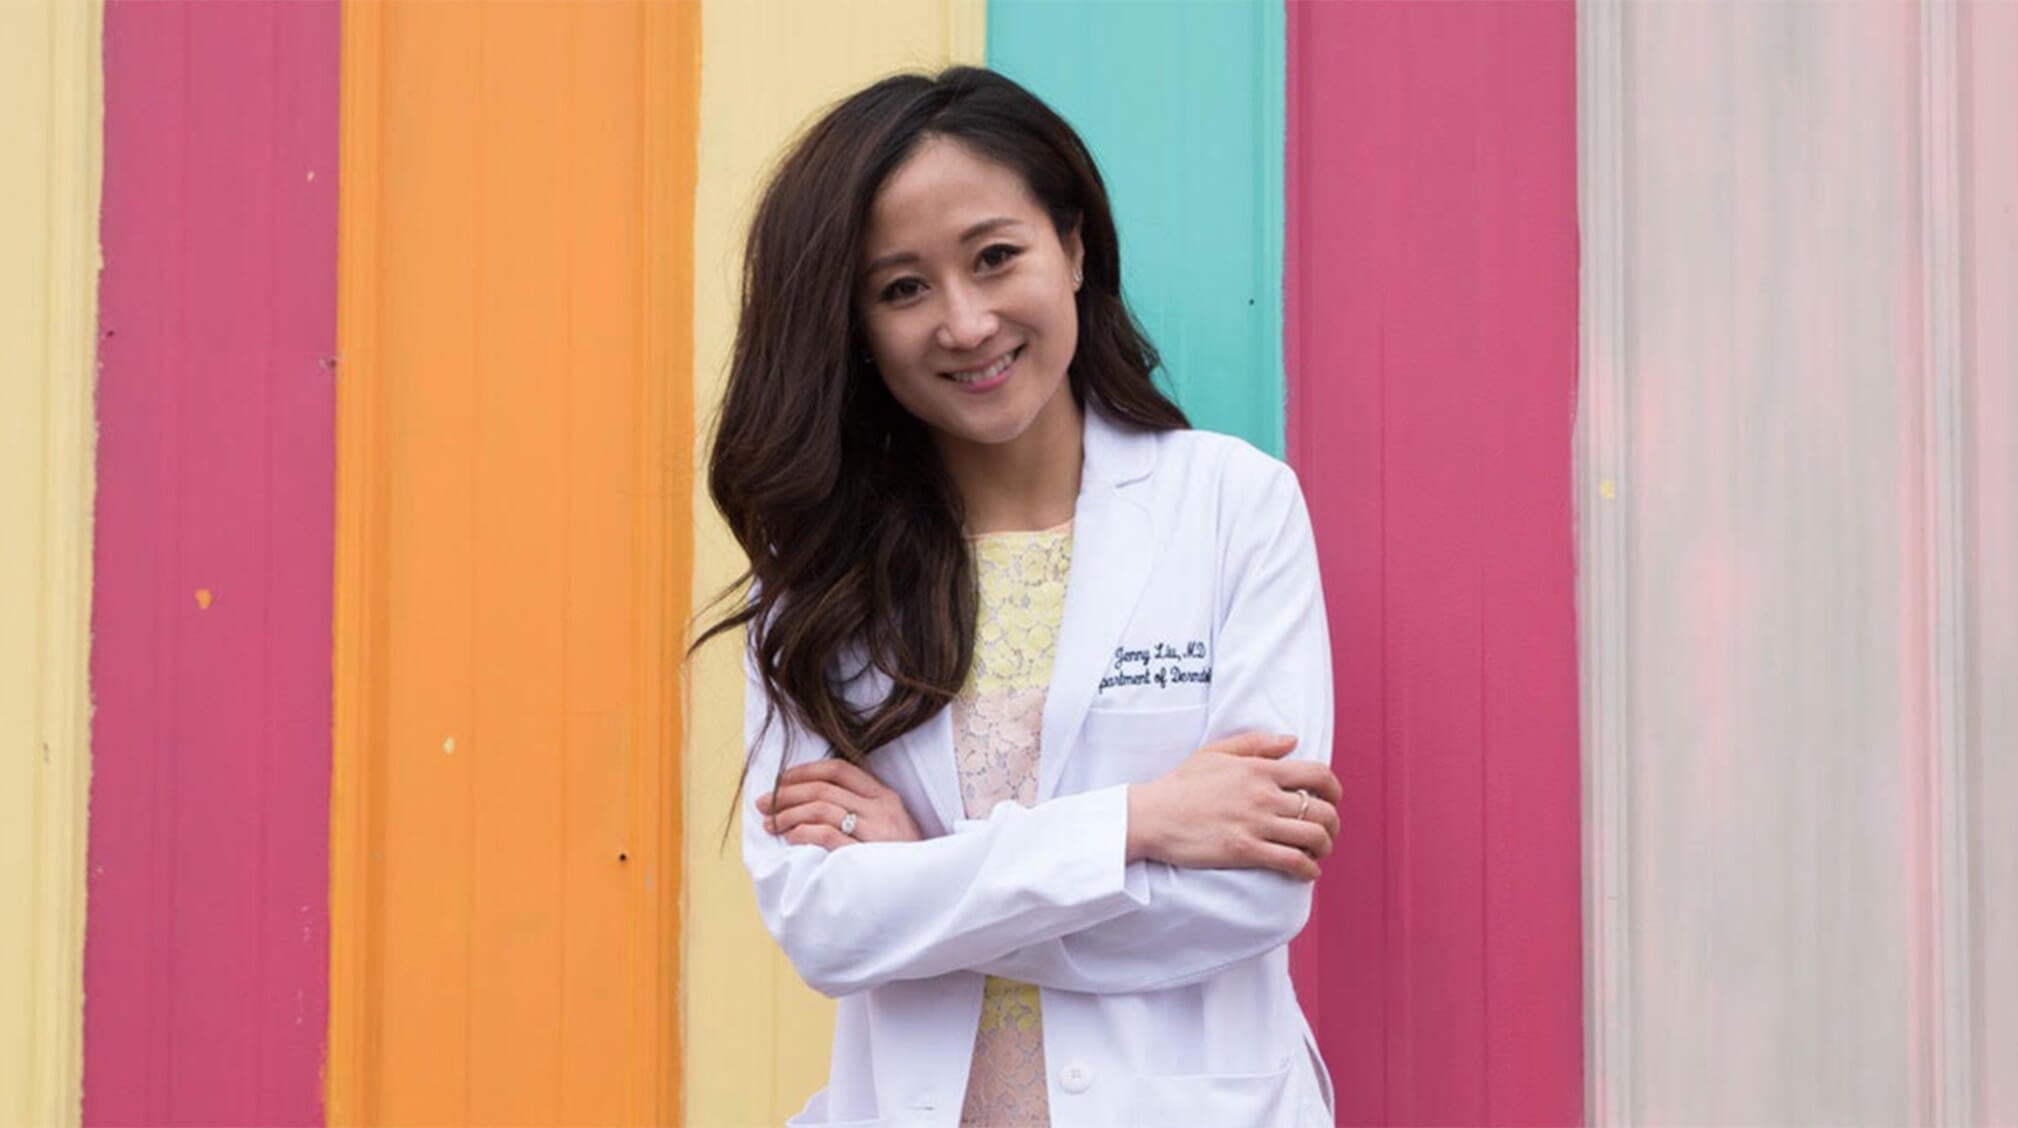 Dr. Jenny Liu